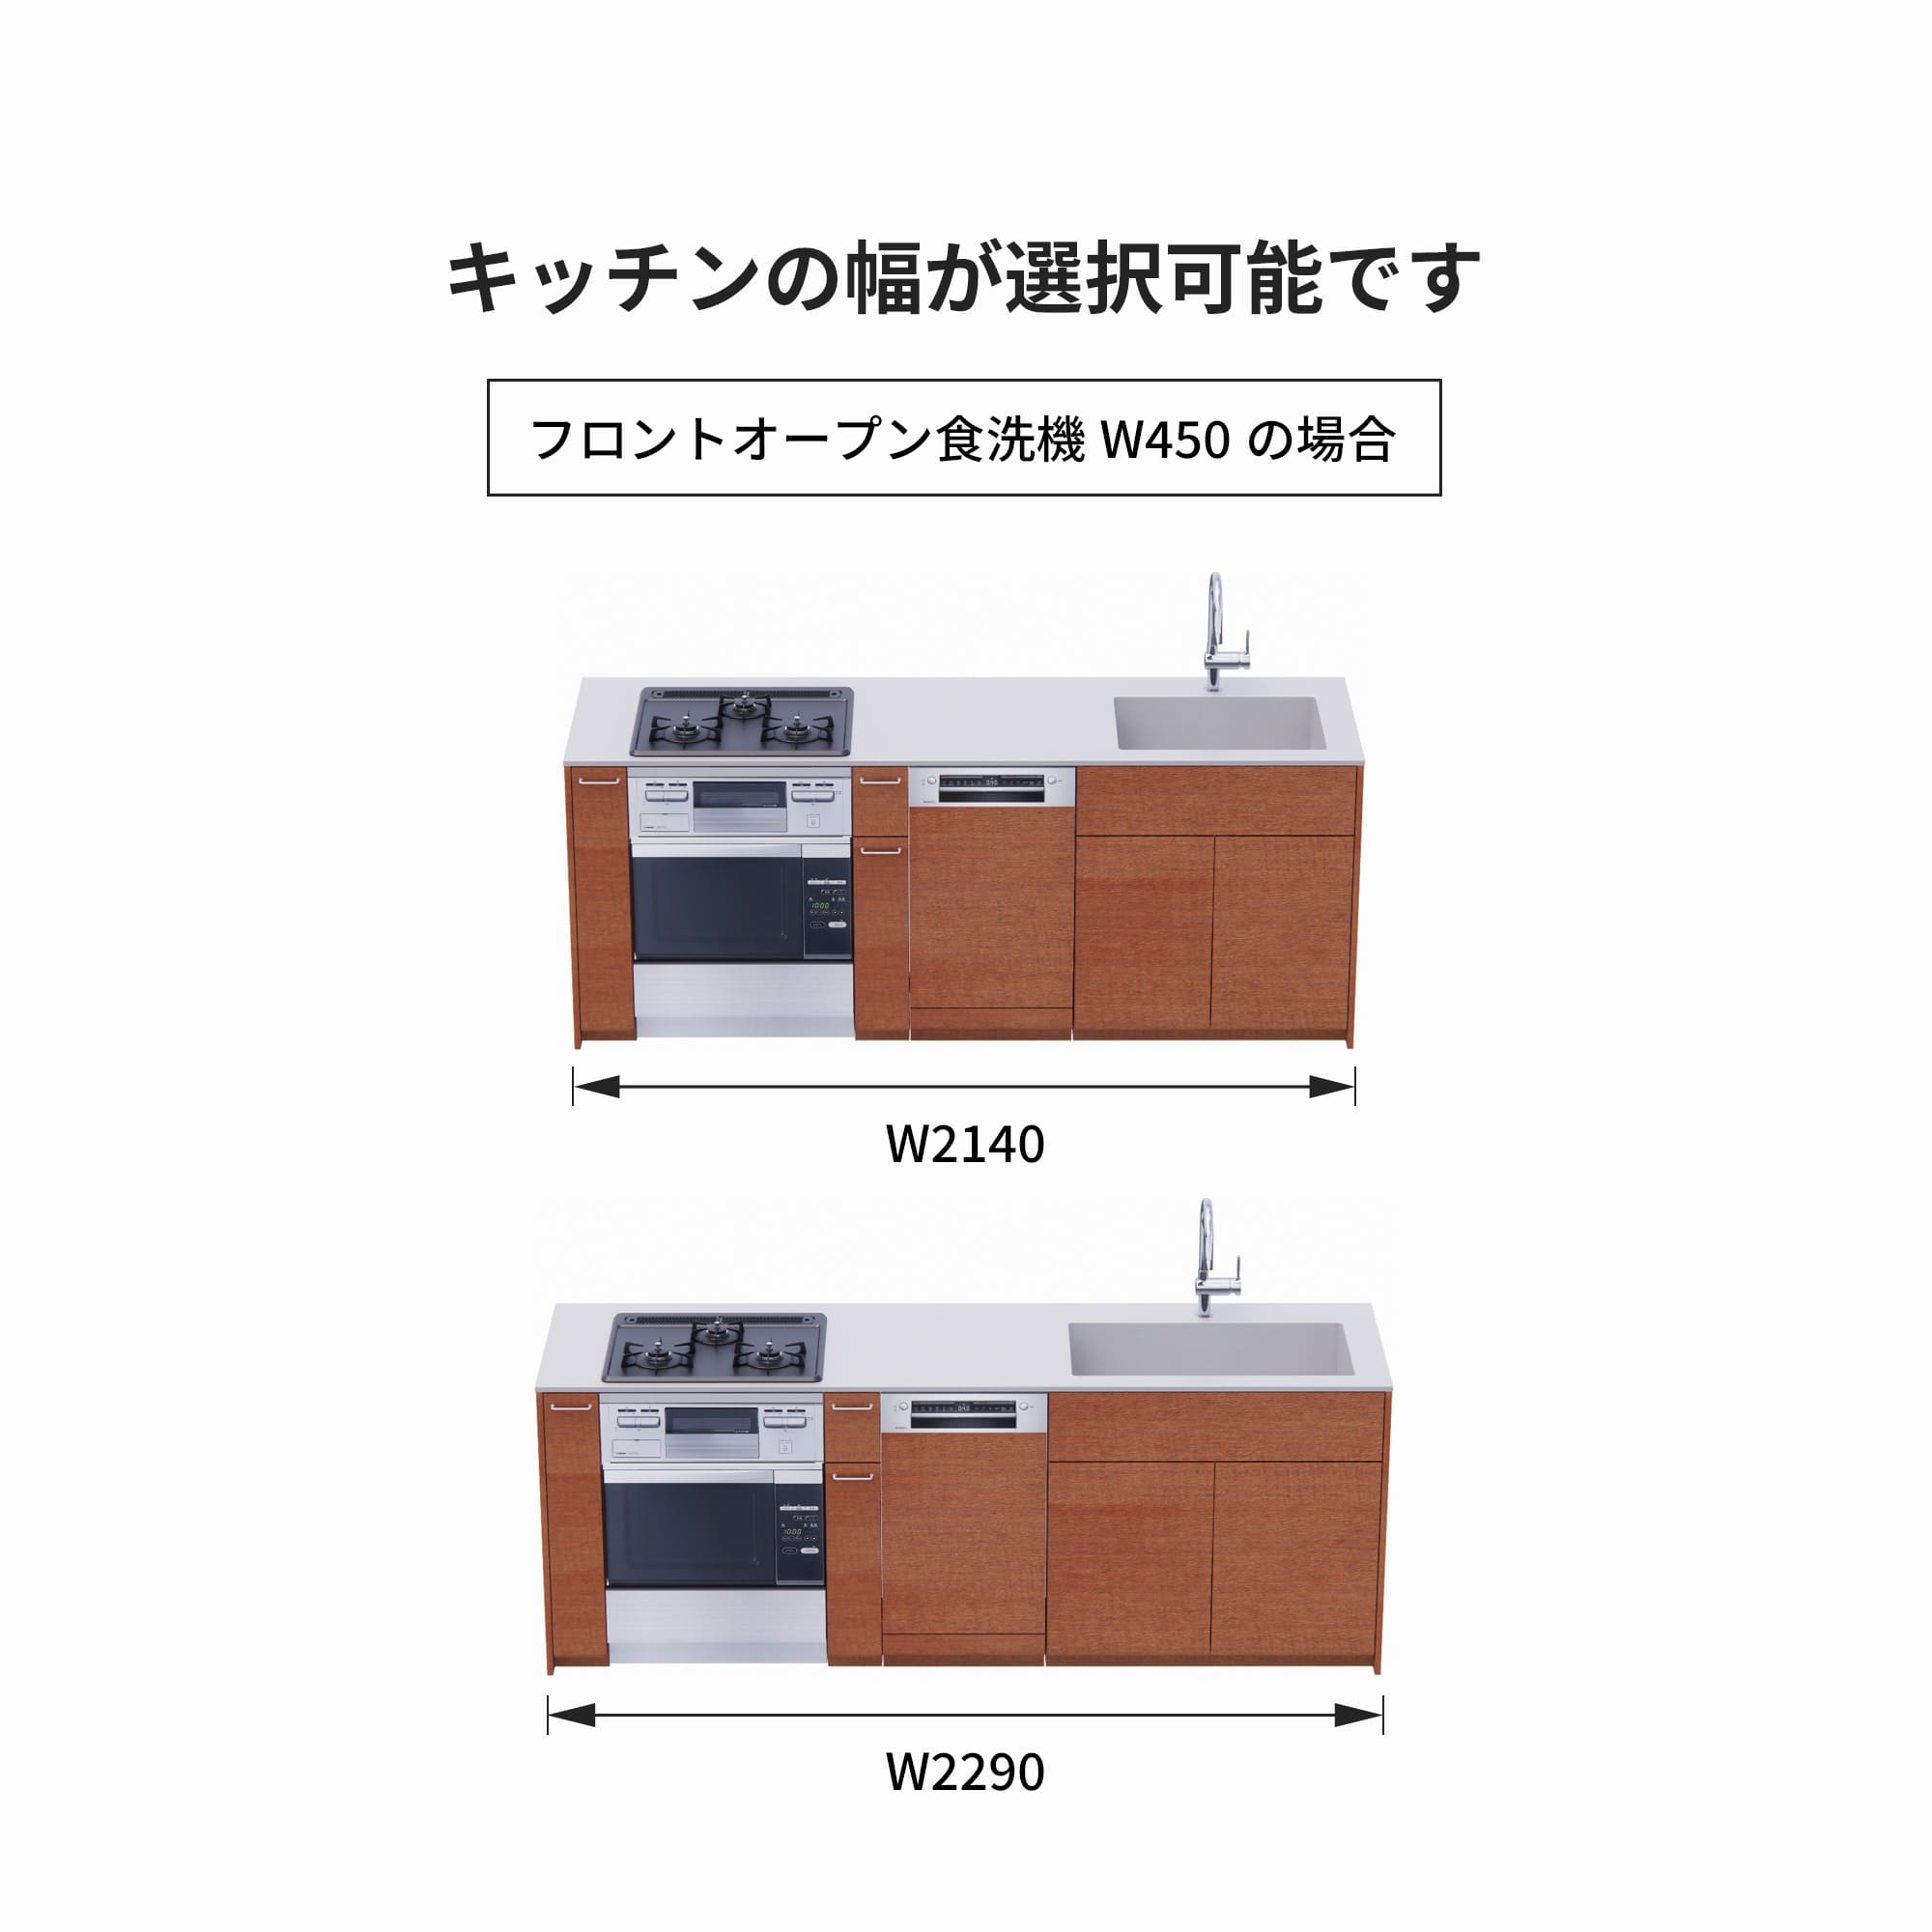 木製システムキッチン 壁付け型 W2140～2290・コンロあり / オーブンあり / 食洗機あり KB-KC022-22-G183 フロントオープン450の場合